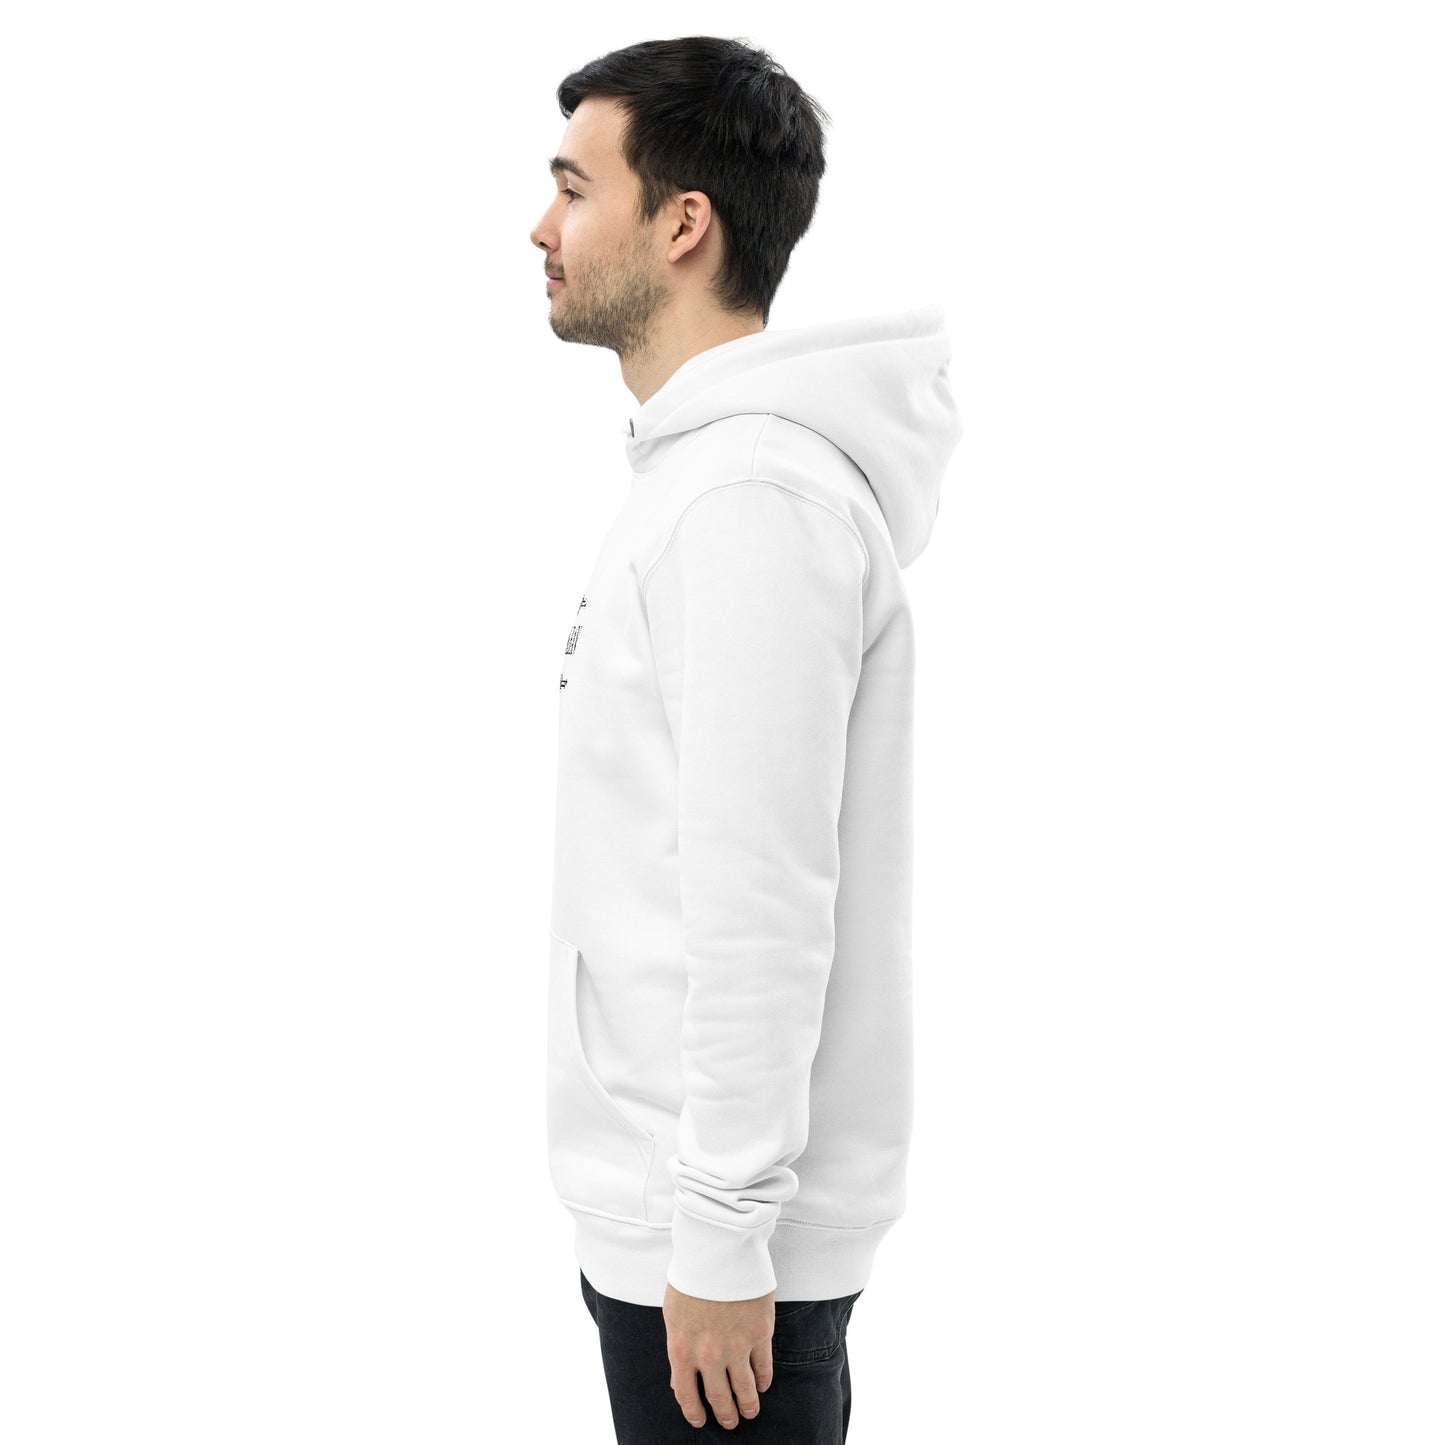 Menkrav Initiate hoodie white